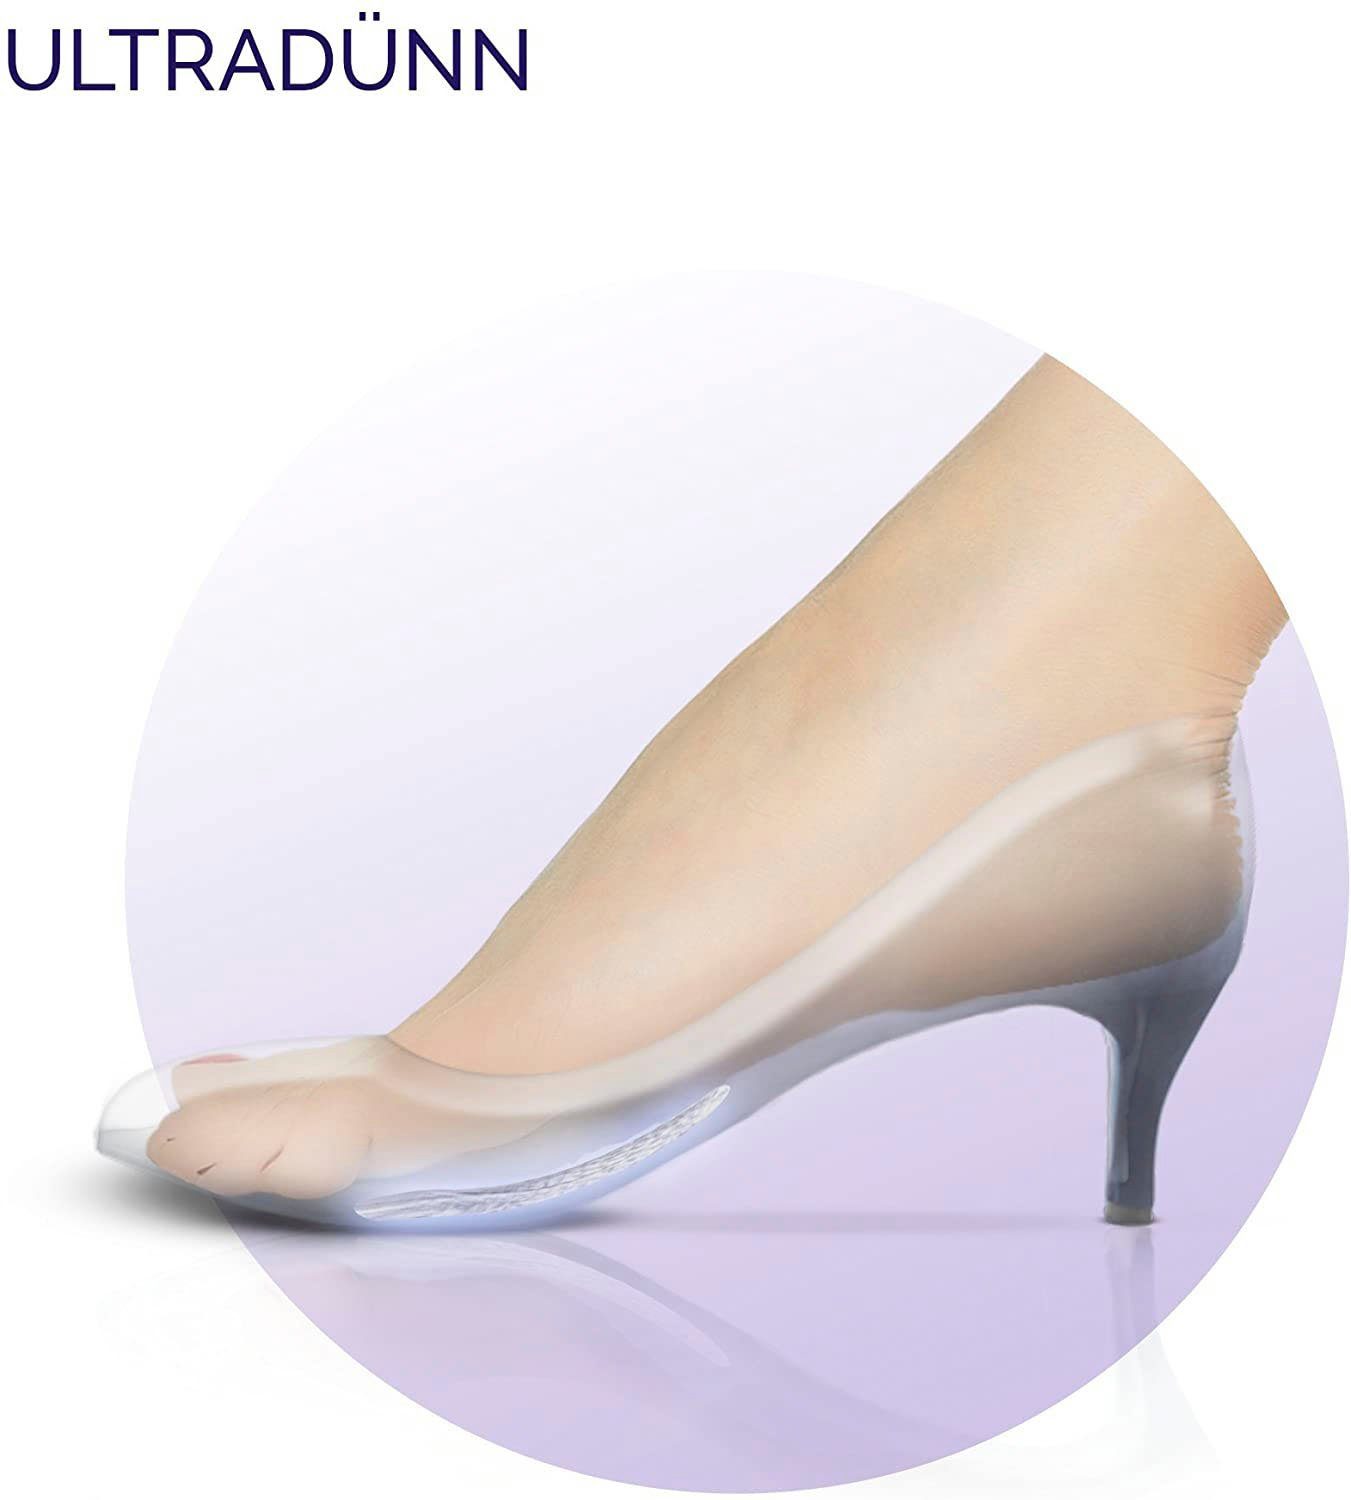 Einlegesohlen für Rutschfeste Feet mit Scholl GelActiv Damenschuhe Gelpolster Ballenpolster, Party Technologie